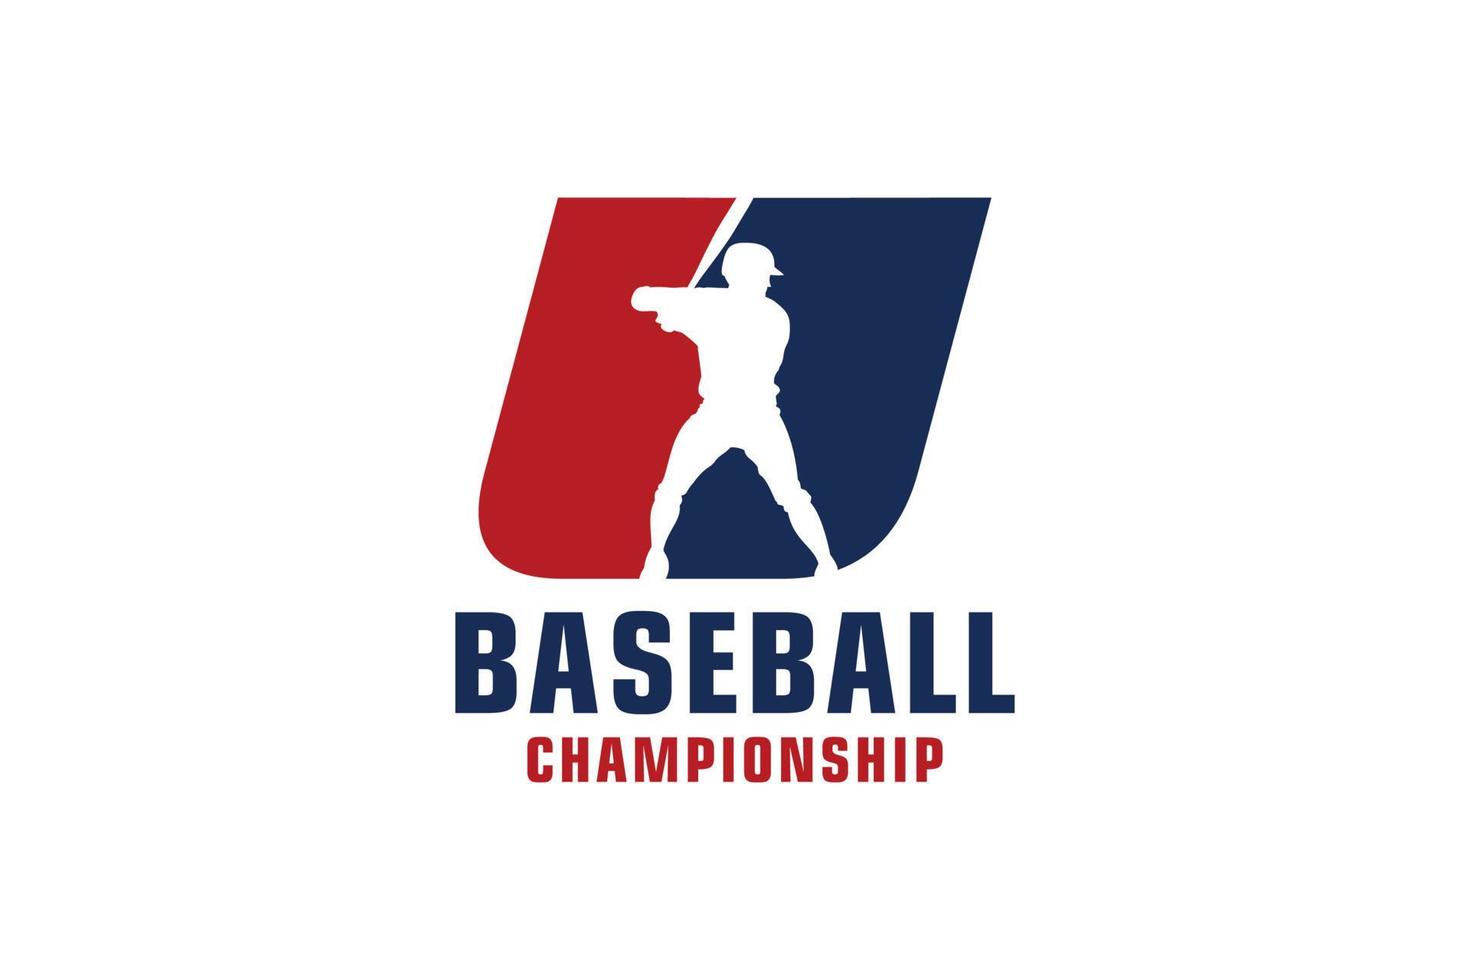 Buchstabe u mit Baseball-Logo-Design. Vektordesign-Vorlagenelemente für Sportteams oder Corporate Identity. vektor